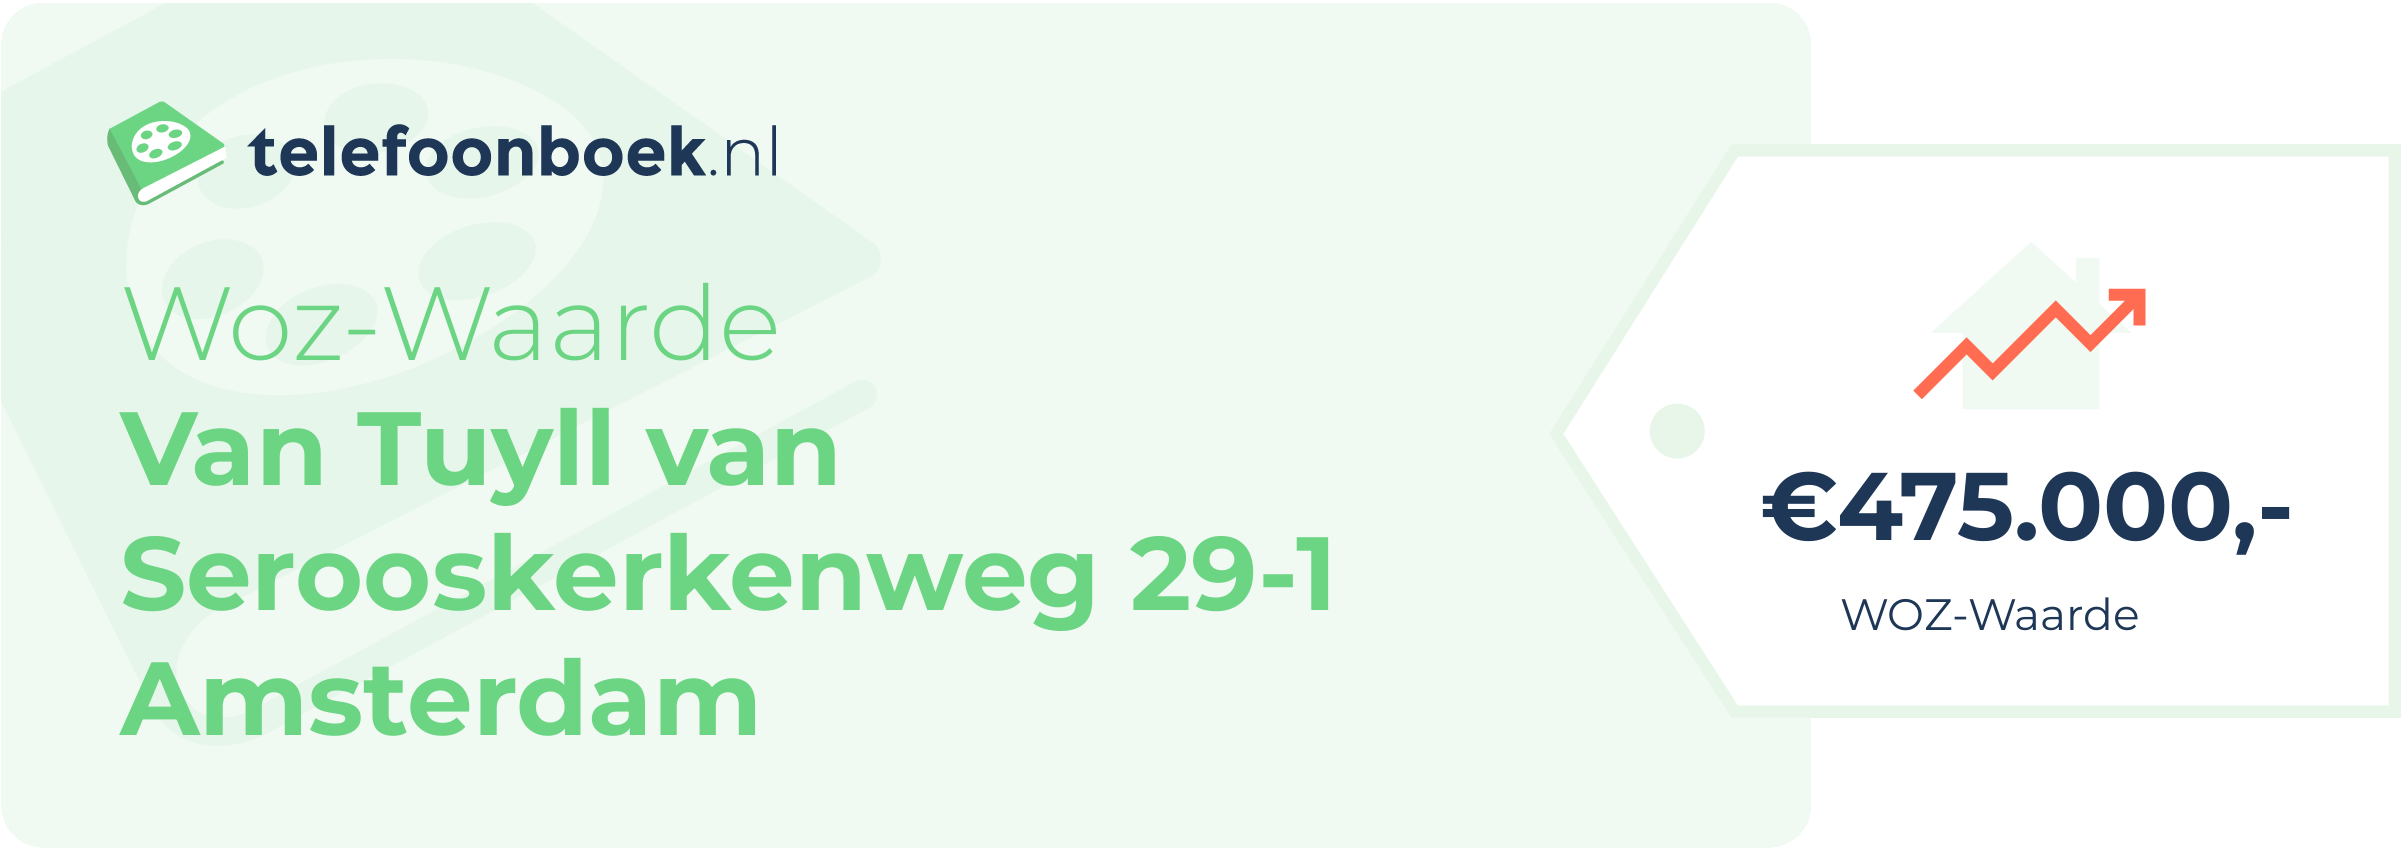 WOZ-waarde Van Tuyll Van Serooskerkenweg 29-1 Amsterdam